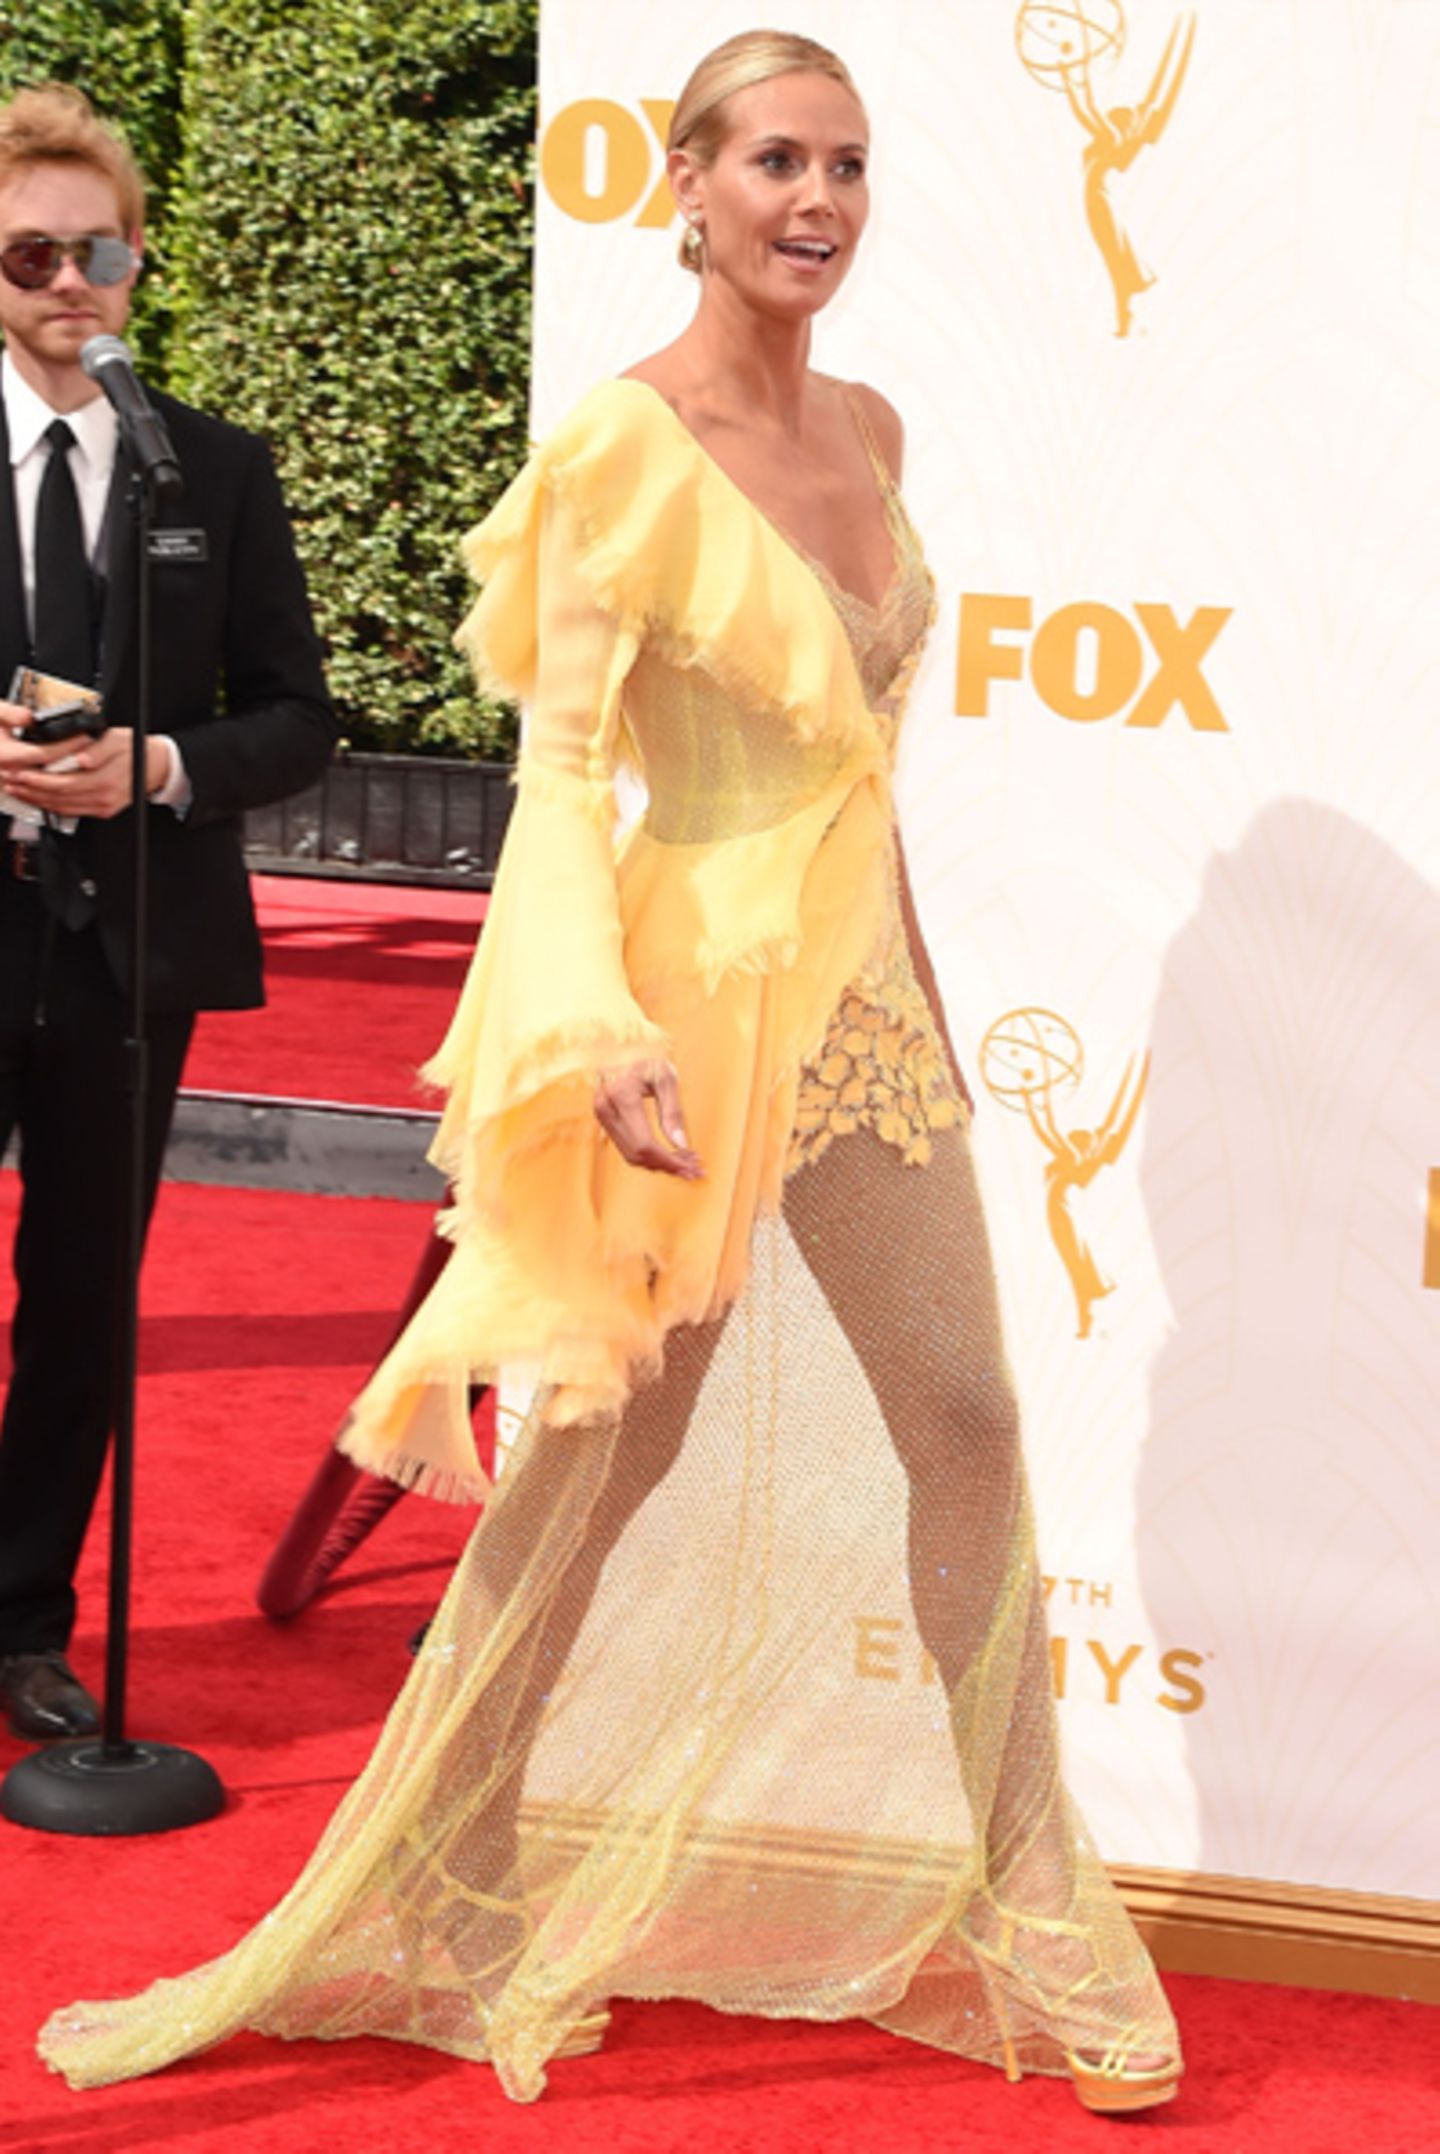 Nachdem der "Naughty Spoon" auf ihrem entblößten Hinterteil für jede Menge Aufgregung gesorgt hat, kündigt sich in dem Bibo-gelben Chiffon-Fetzen nun der nächste Shitstorm an. Unser Flop 1: Heidi Klum in einem gelben Alptraum-Kleid von Versace.